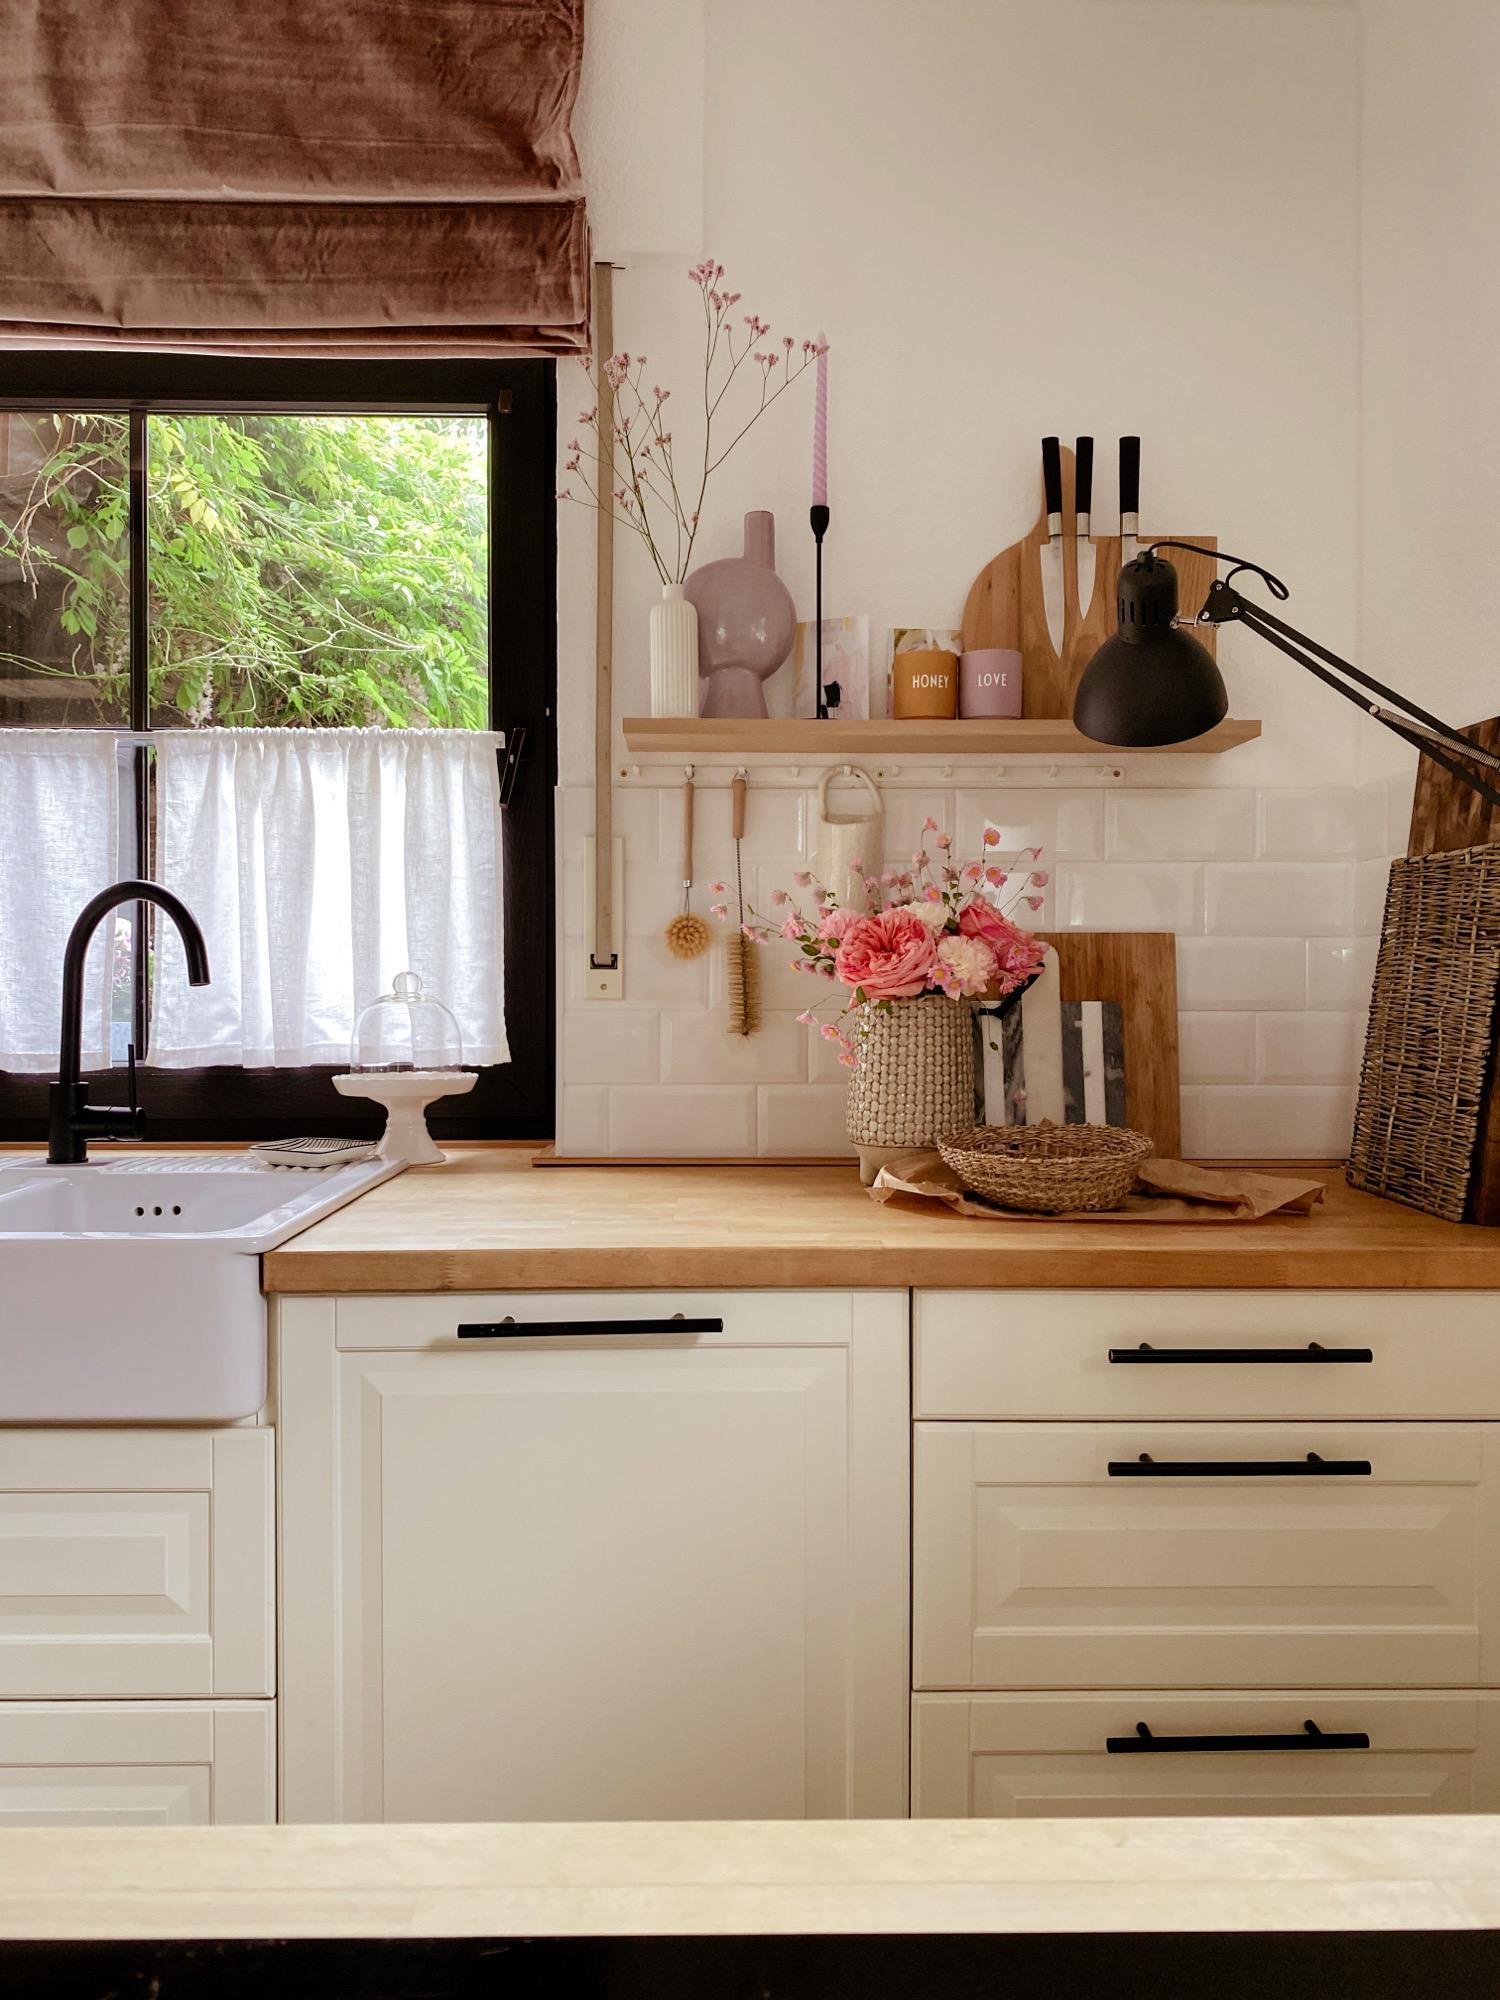 Kitchenview
#küchendesign#scandihome#landhausküche#blickinsgrüne#details#kitchen#cottagestyle